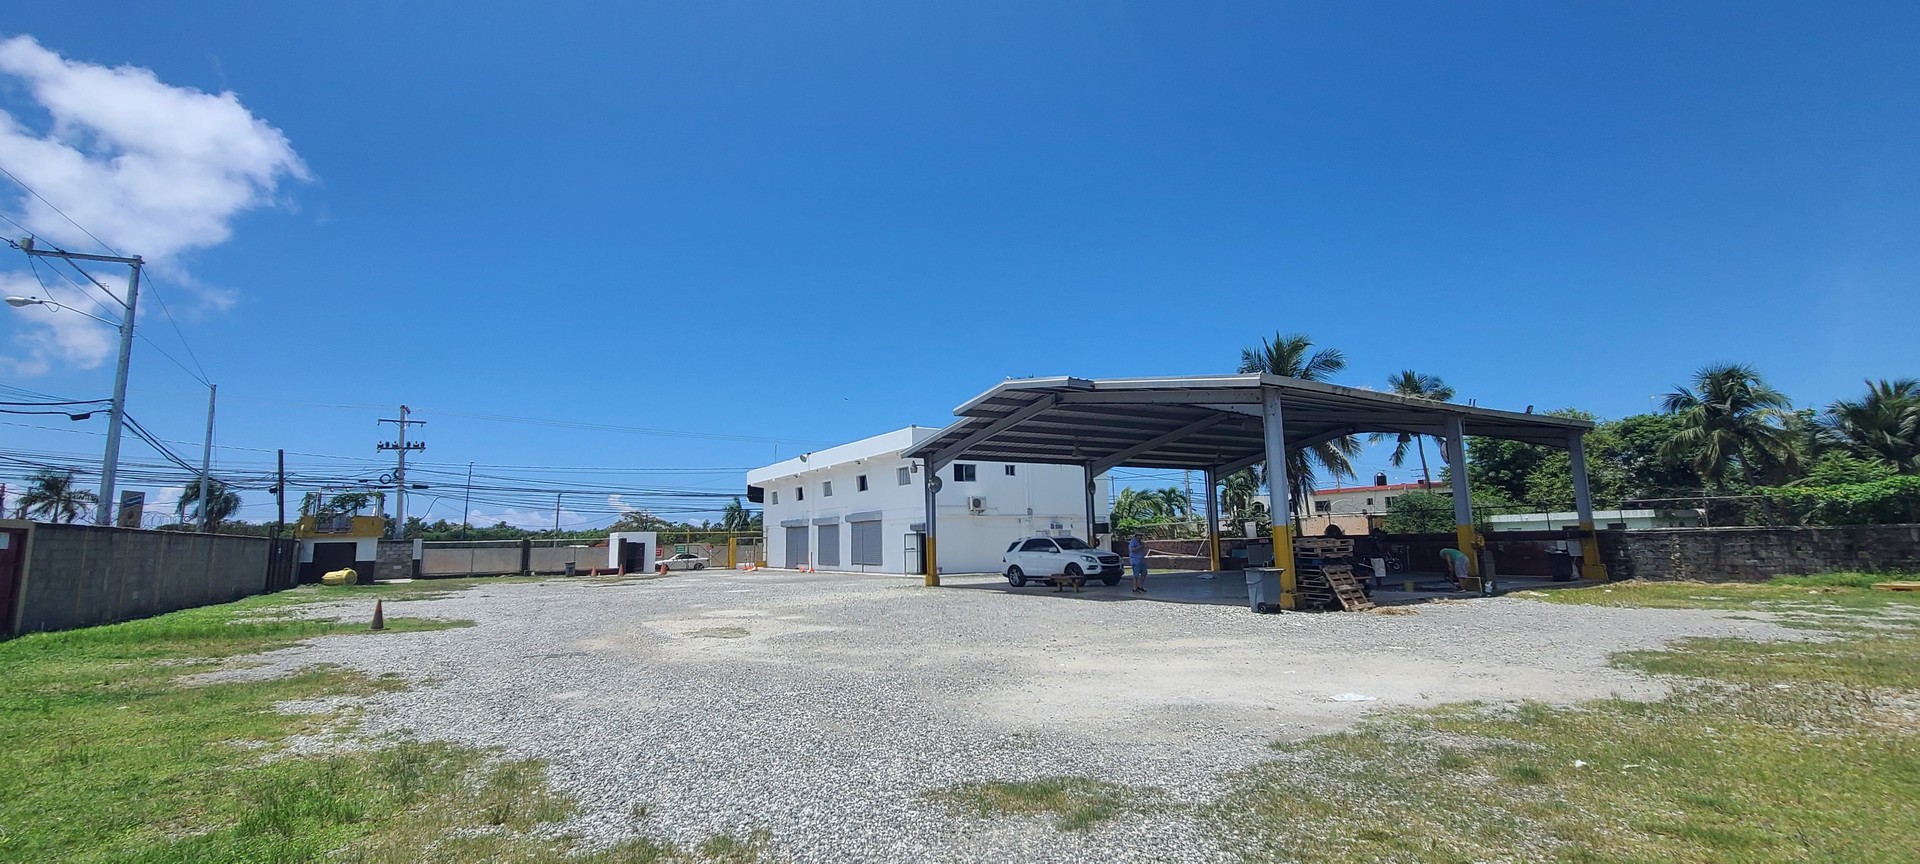 oficinas y locales comerciales - Local comercial en venta y alquiler en La Caleta, Boca Chica de 690m2 7